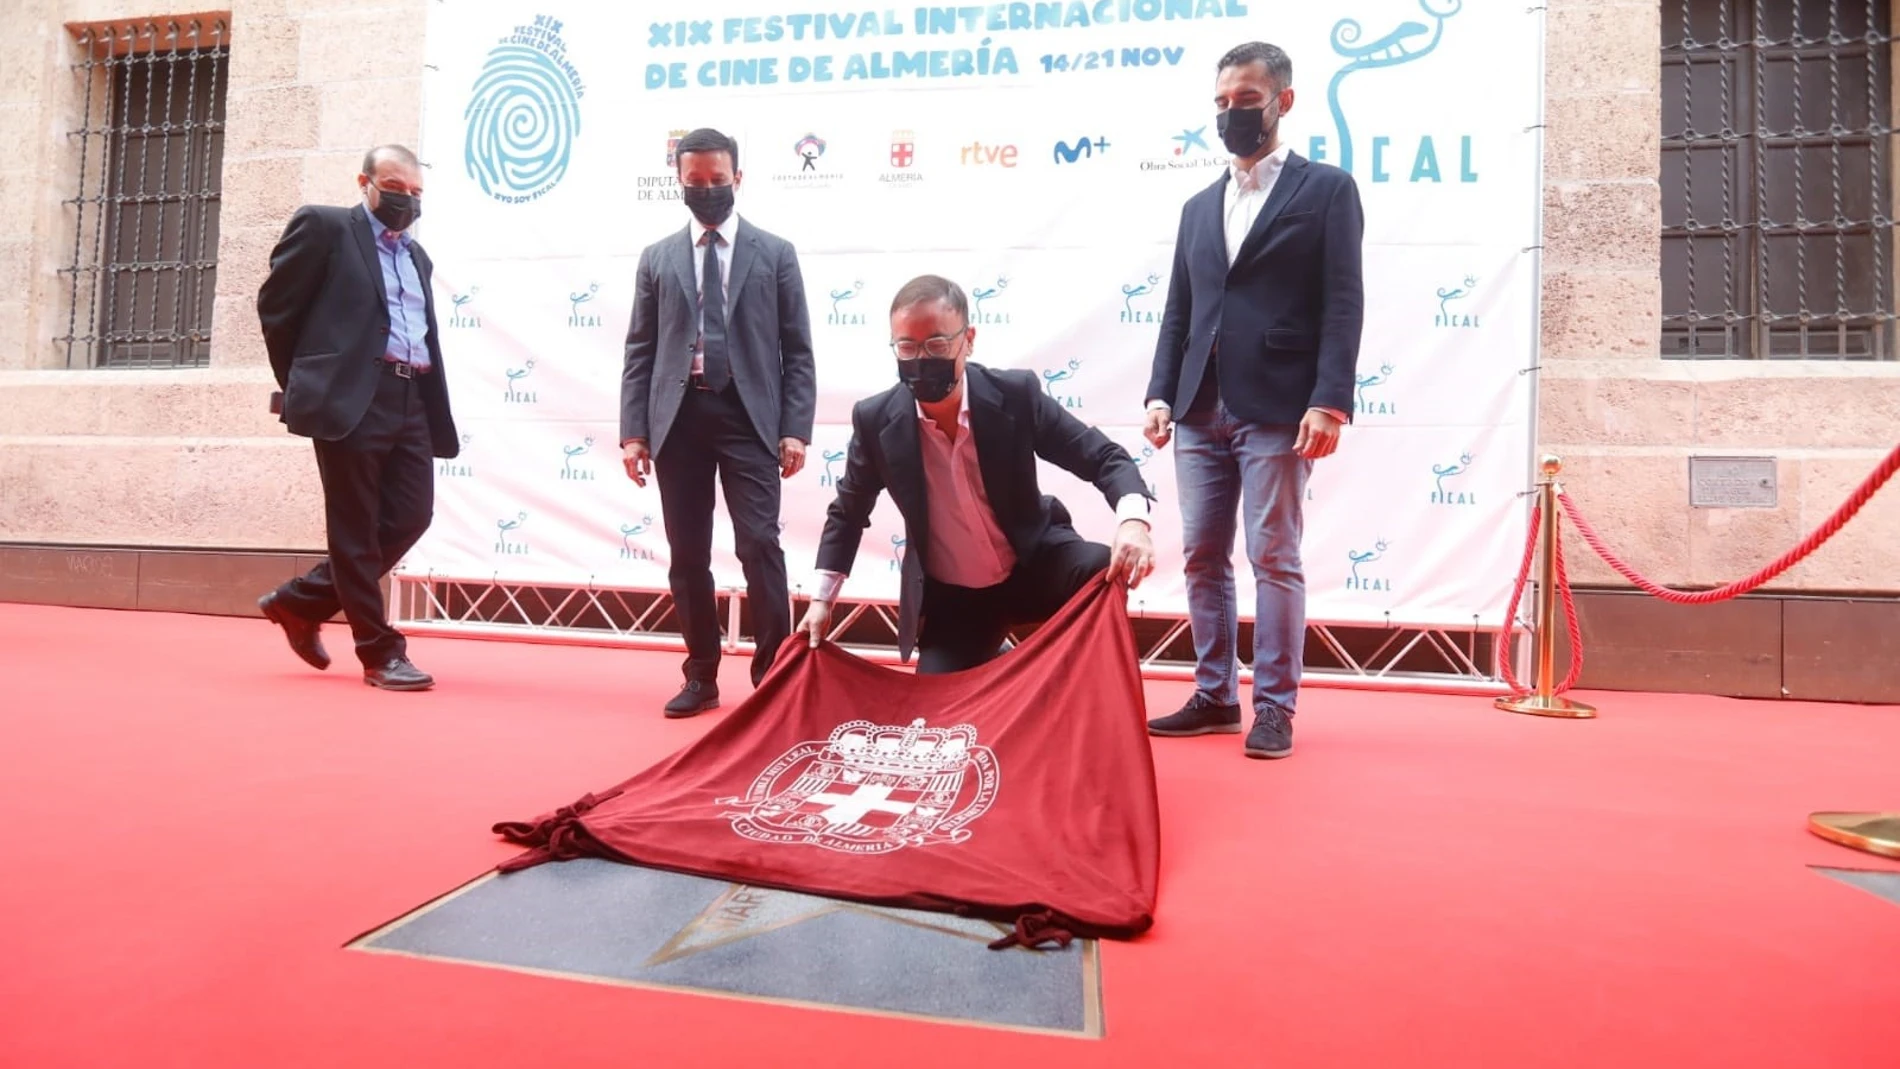 Manuel Martín Cuenca descubre su estrella en el Paseo de la Fama de Almería en el marco de Fical